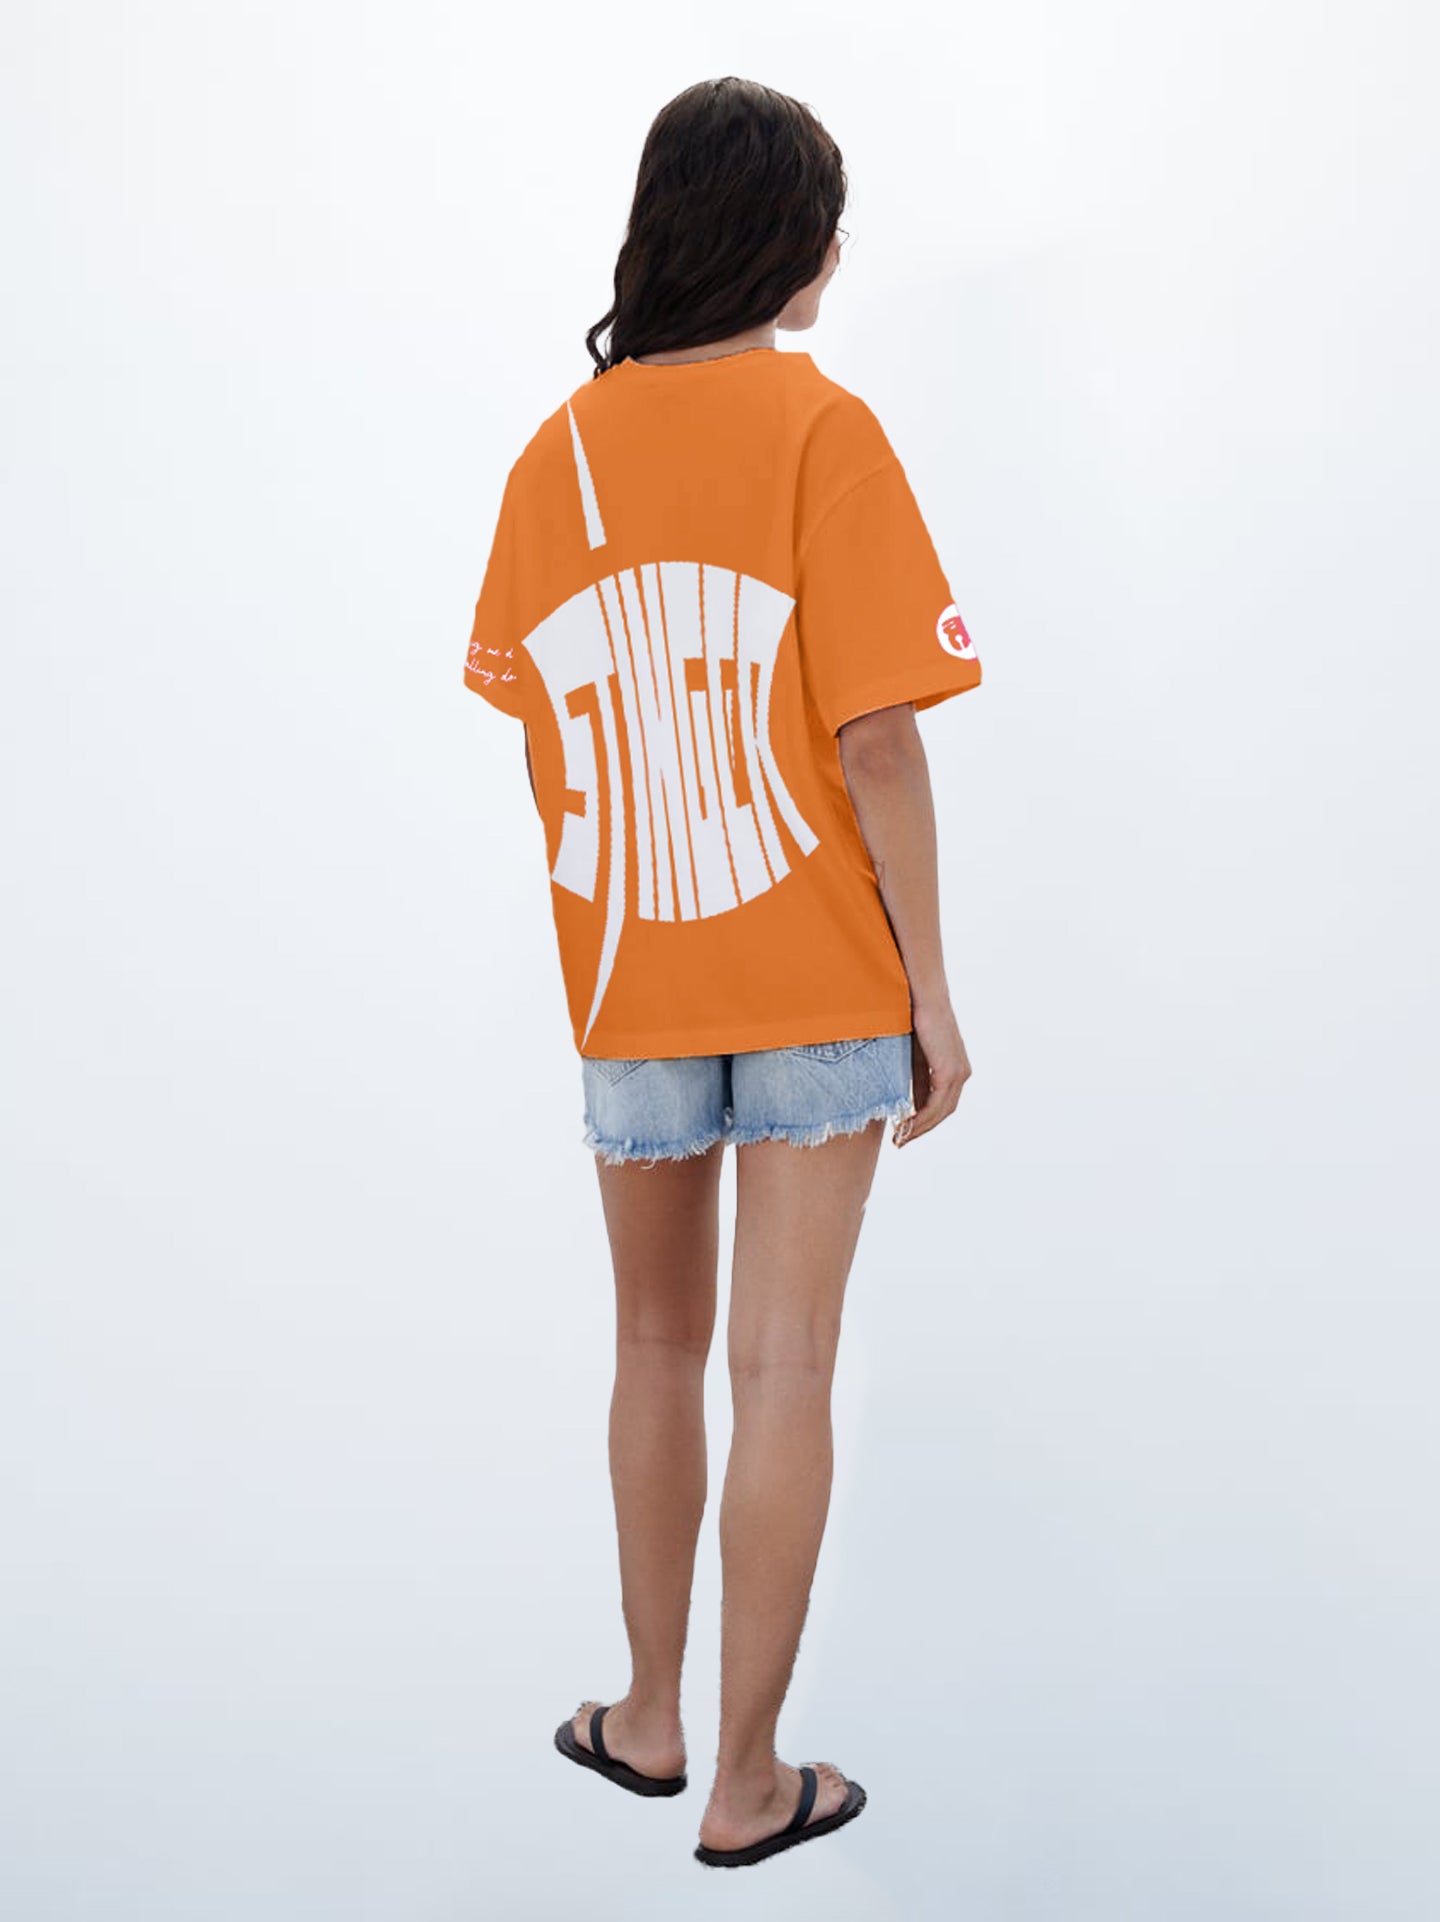 Stinger Scorpion Oversized T-shirt (Orange)- AYCS